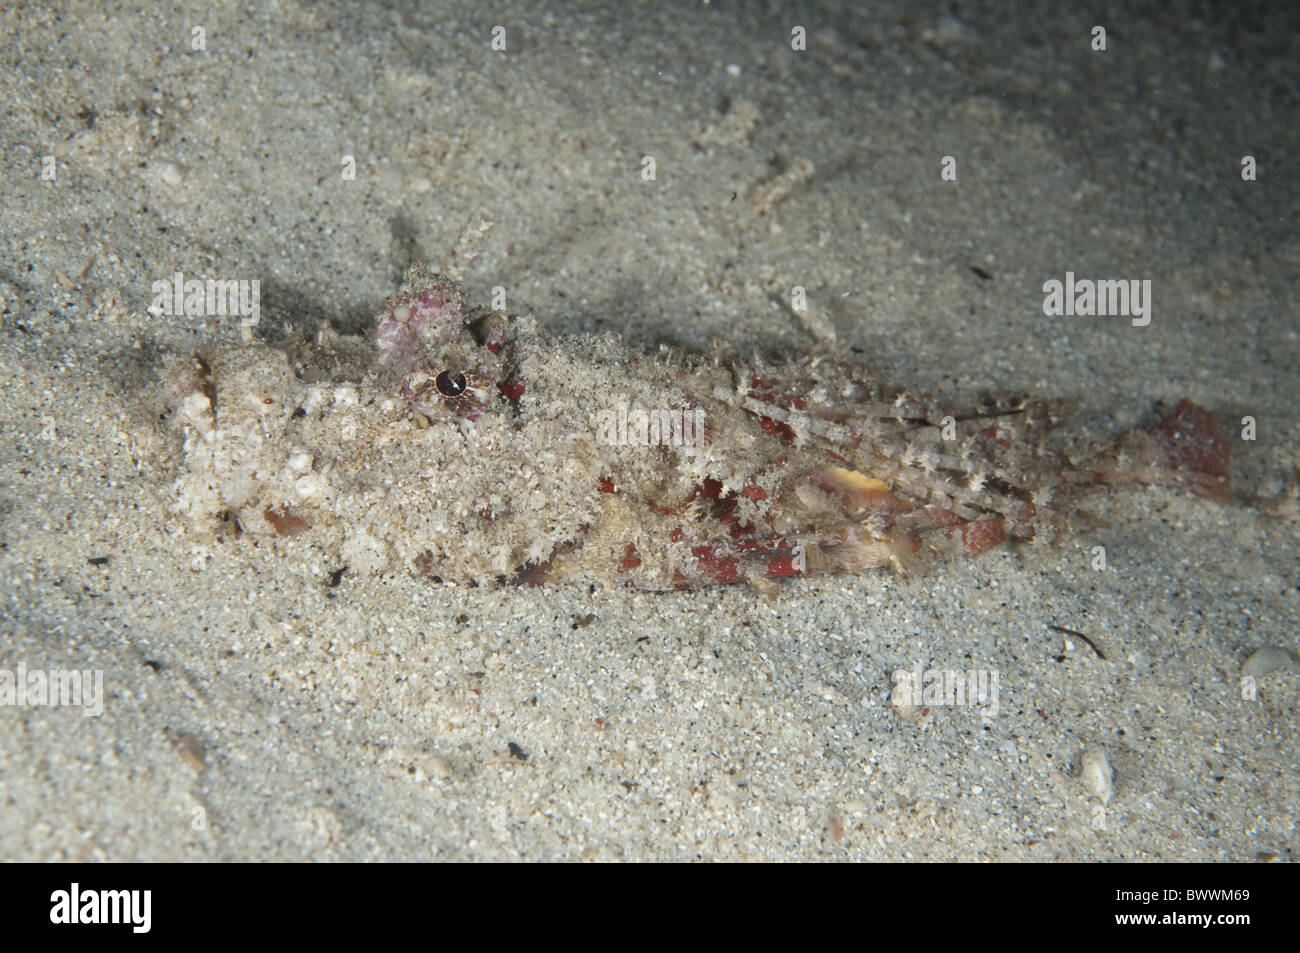 Stachelige Devilfish Inimicus Didactylus begraben Sand Maluku Taucher Nacht Fischen Reef Marine Meer Unterwasser Tauchen Ambon Indonesien Tier Stockfoto